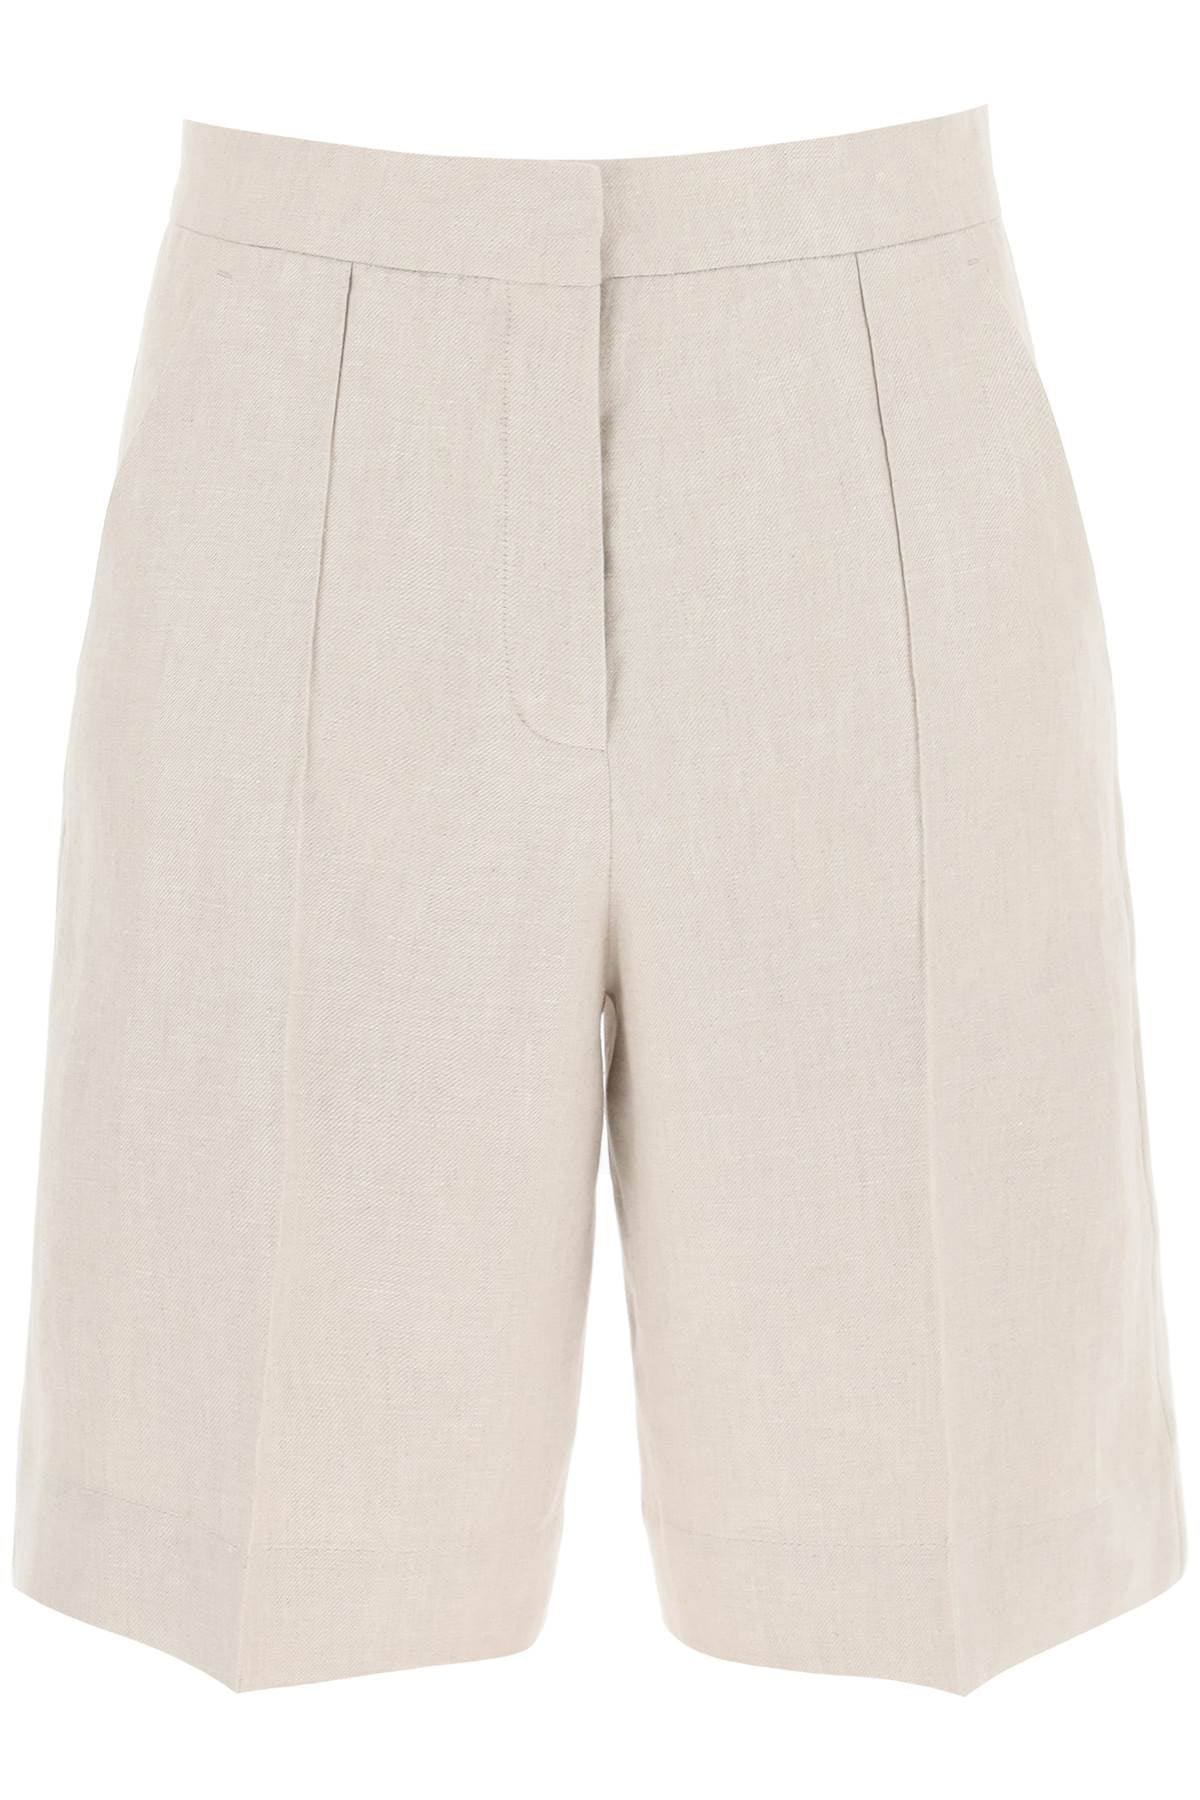 Agnona linen twill shorts-0